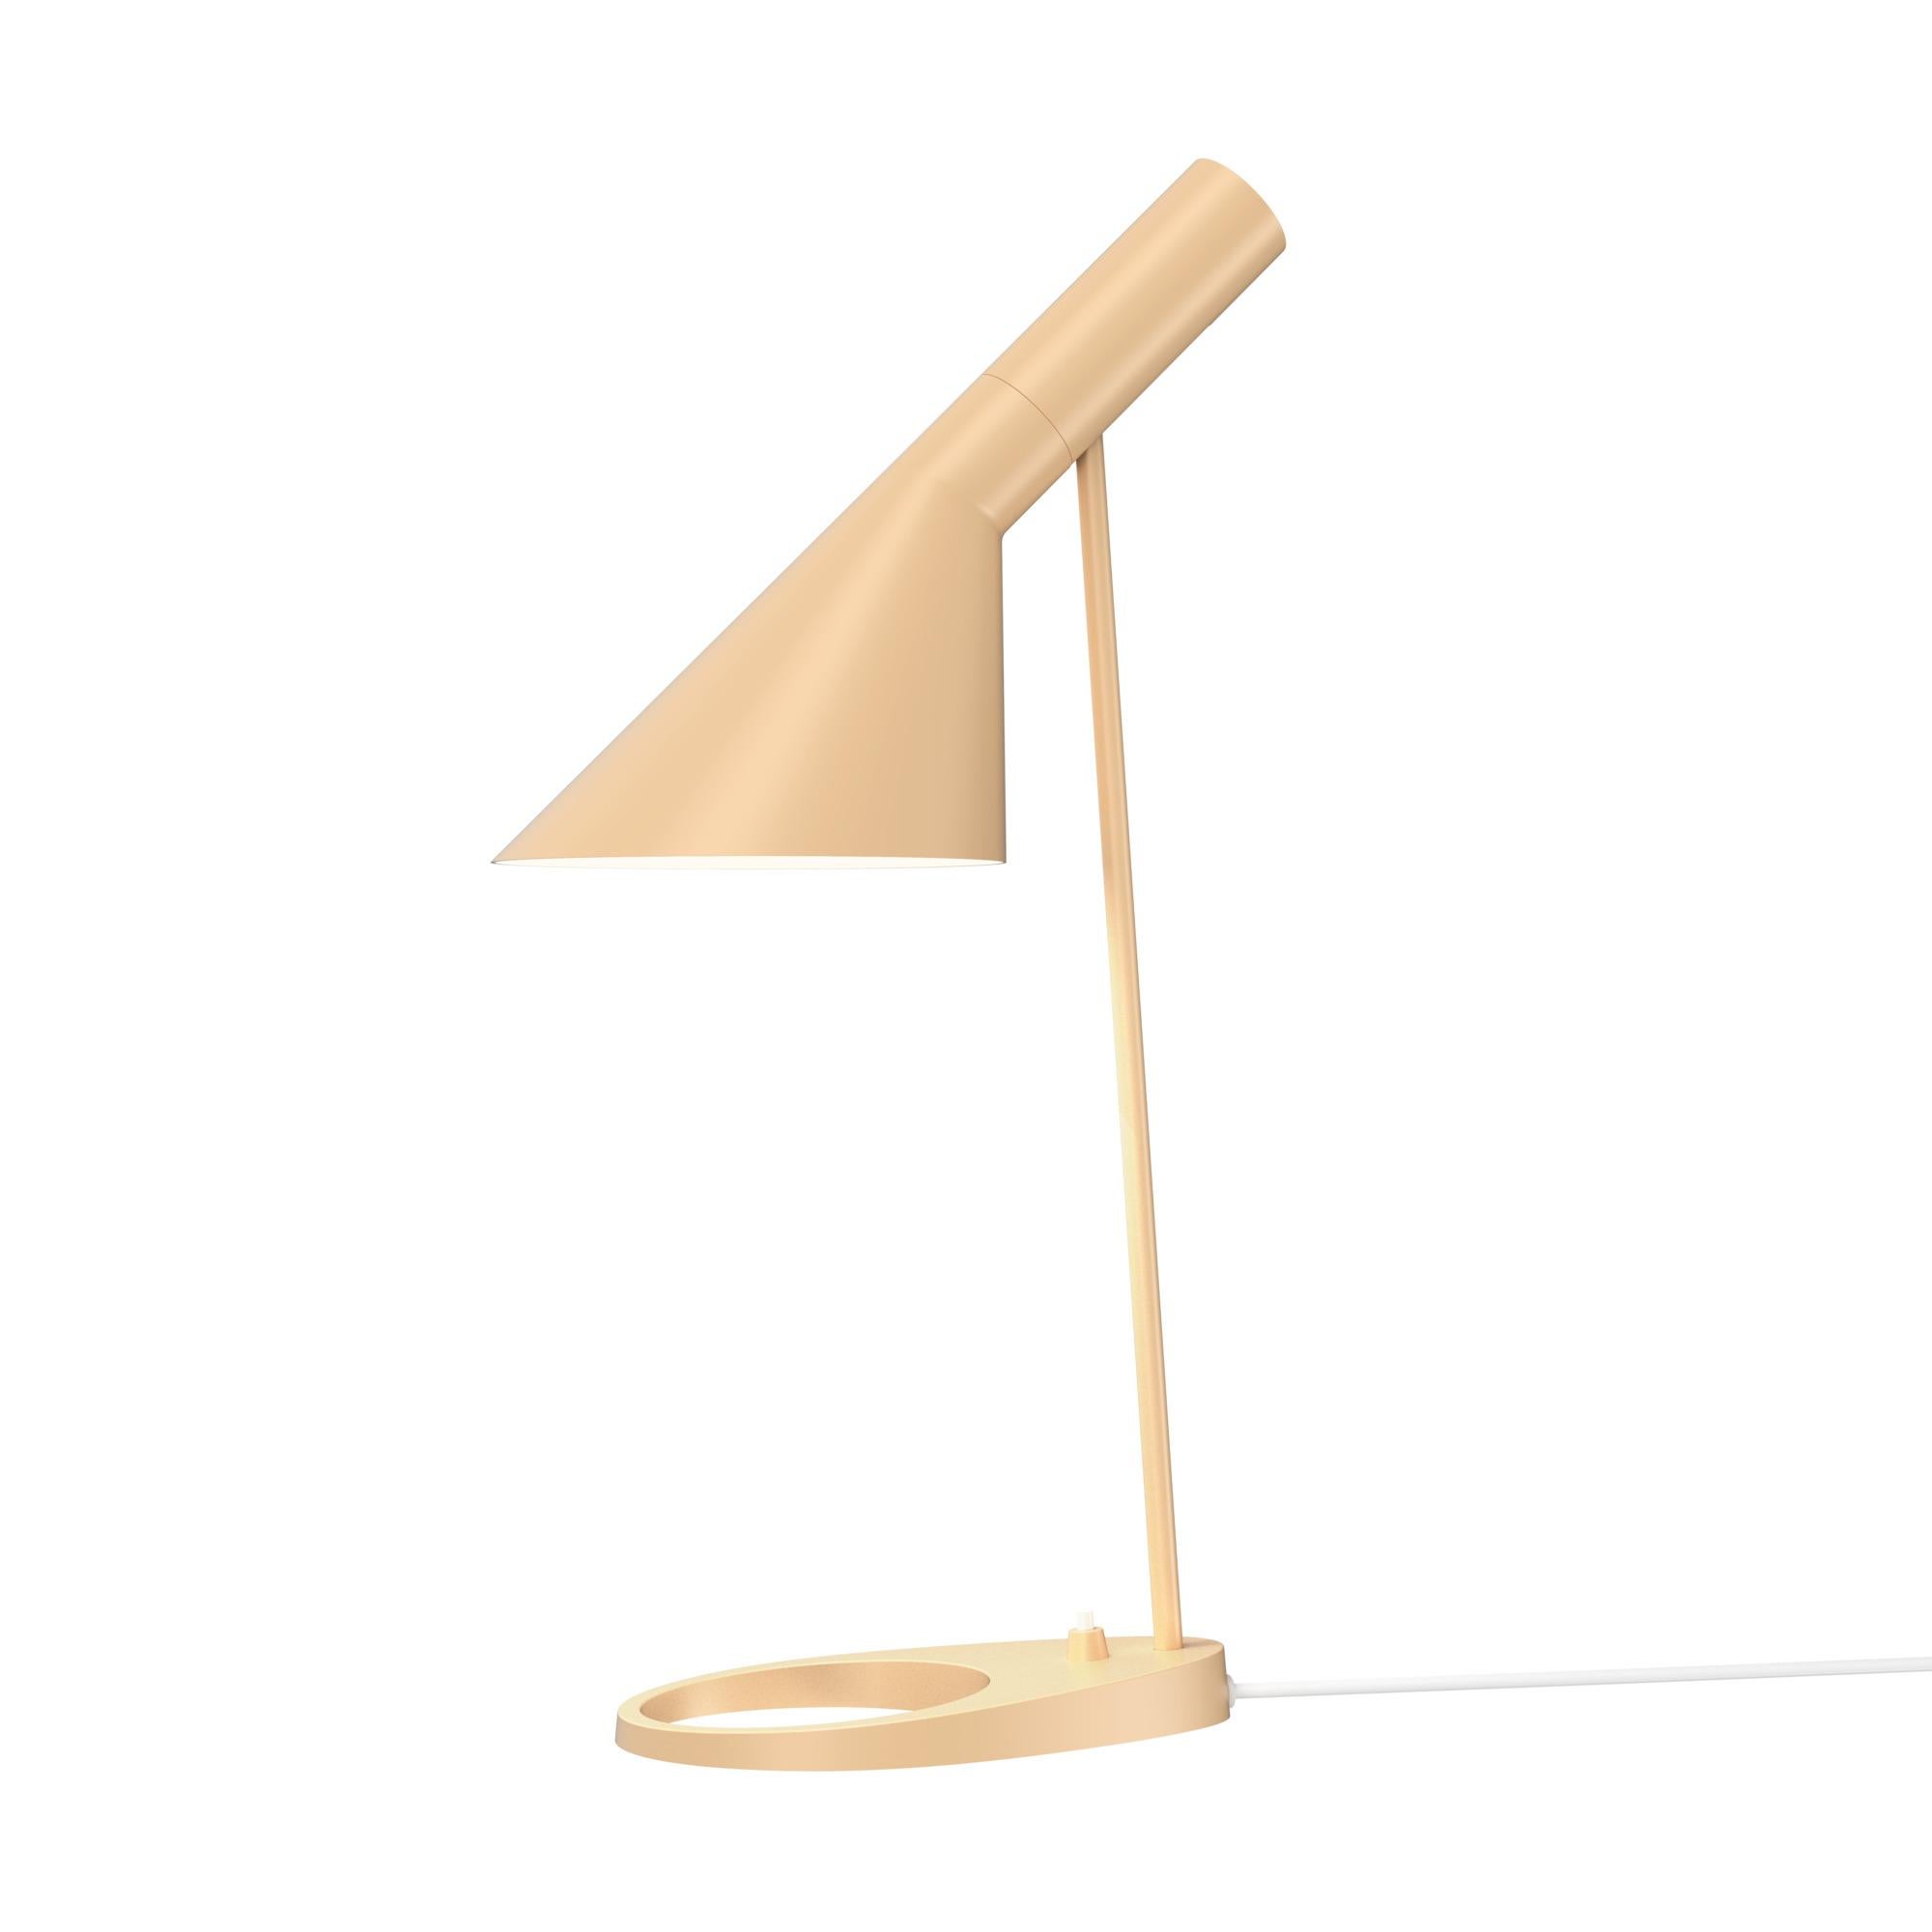 Arne Jacobsen AJ Table Lamp in Black for Louis Poulsen For Sale 9